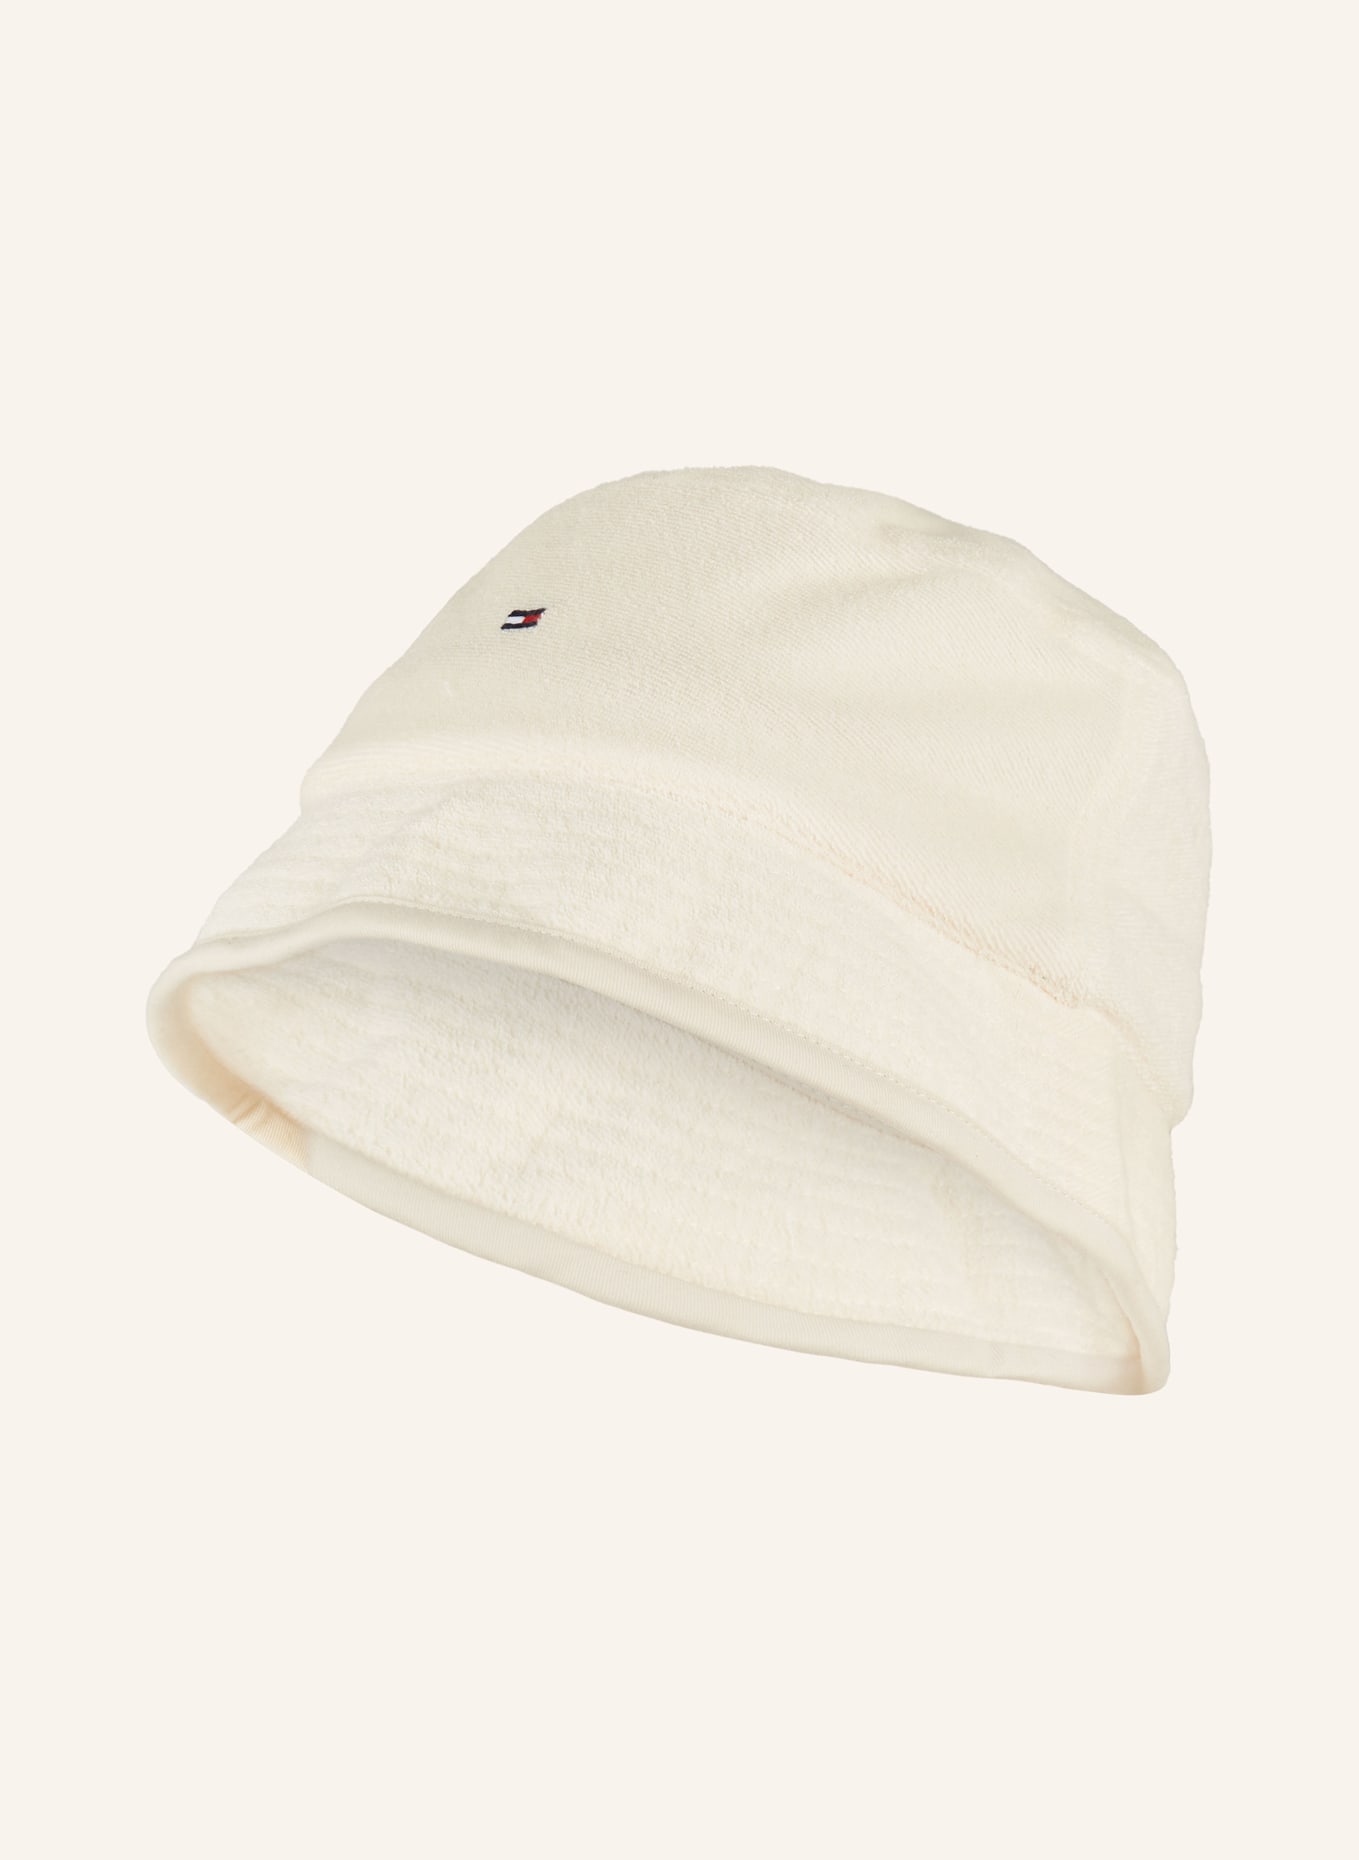 TOMMY HILFIGER Bucket hat, Color: ECRU (Image 1)